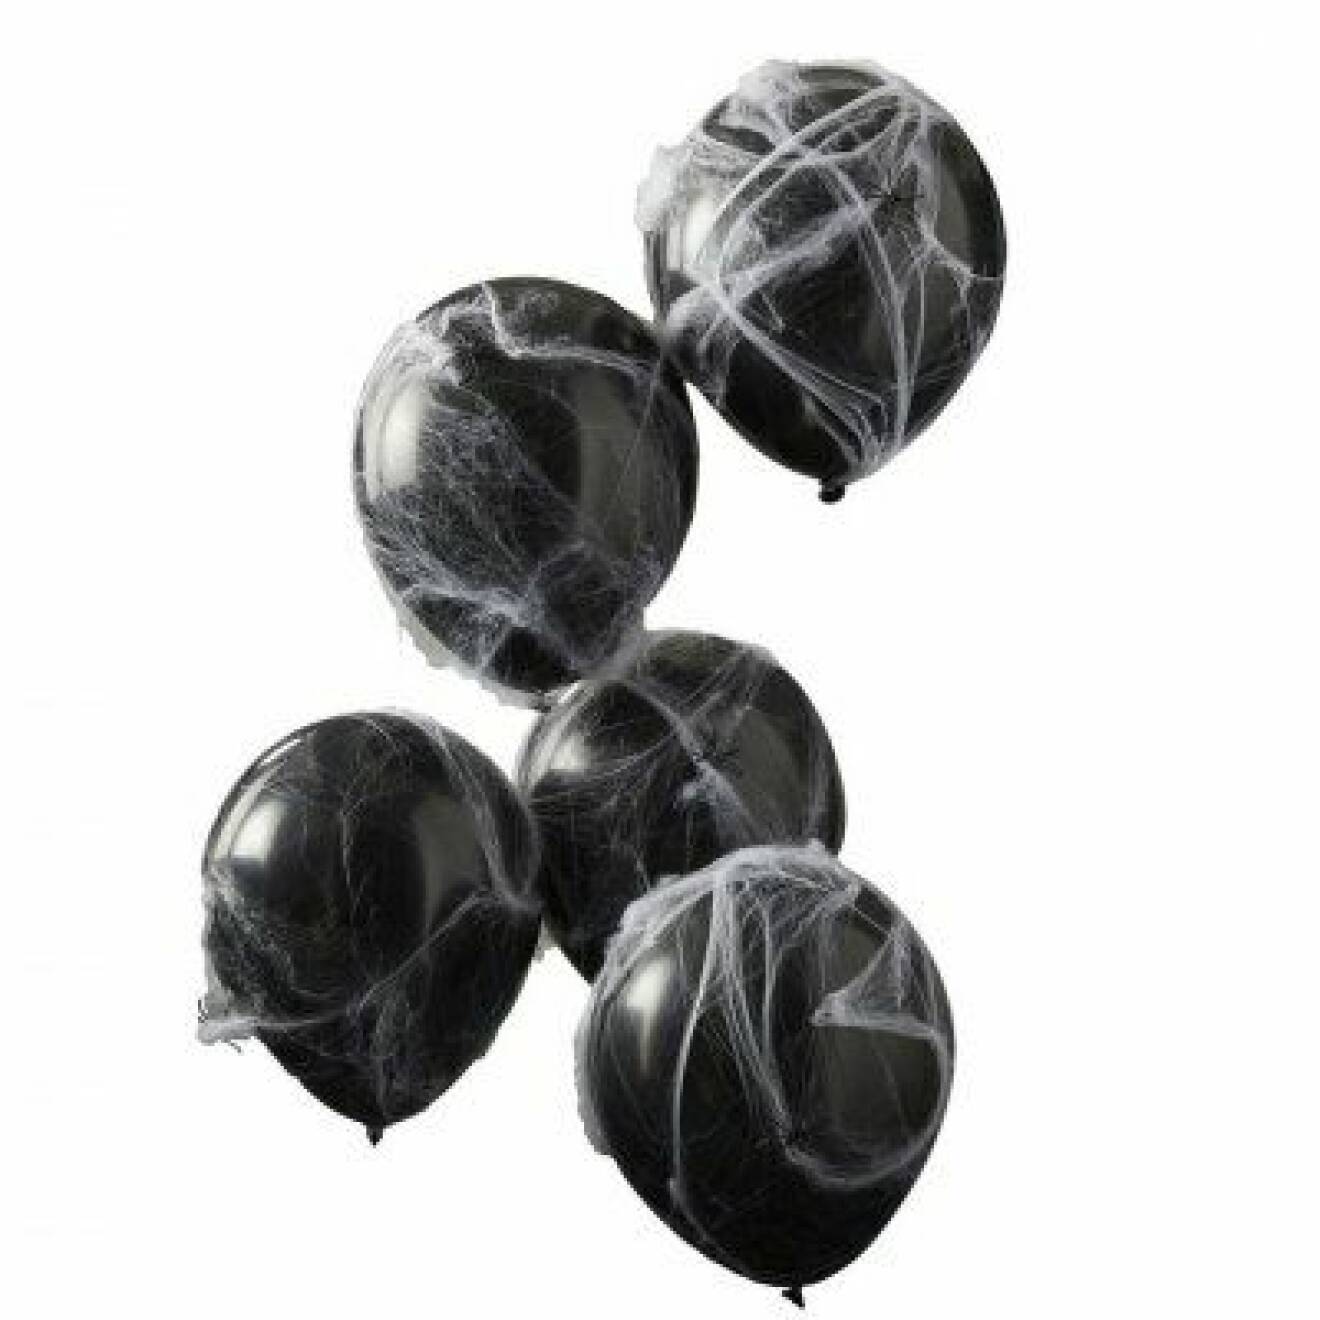 svarta ballonger med spindelnät